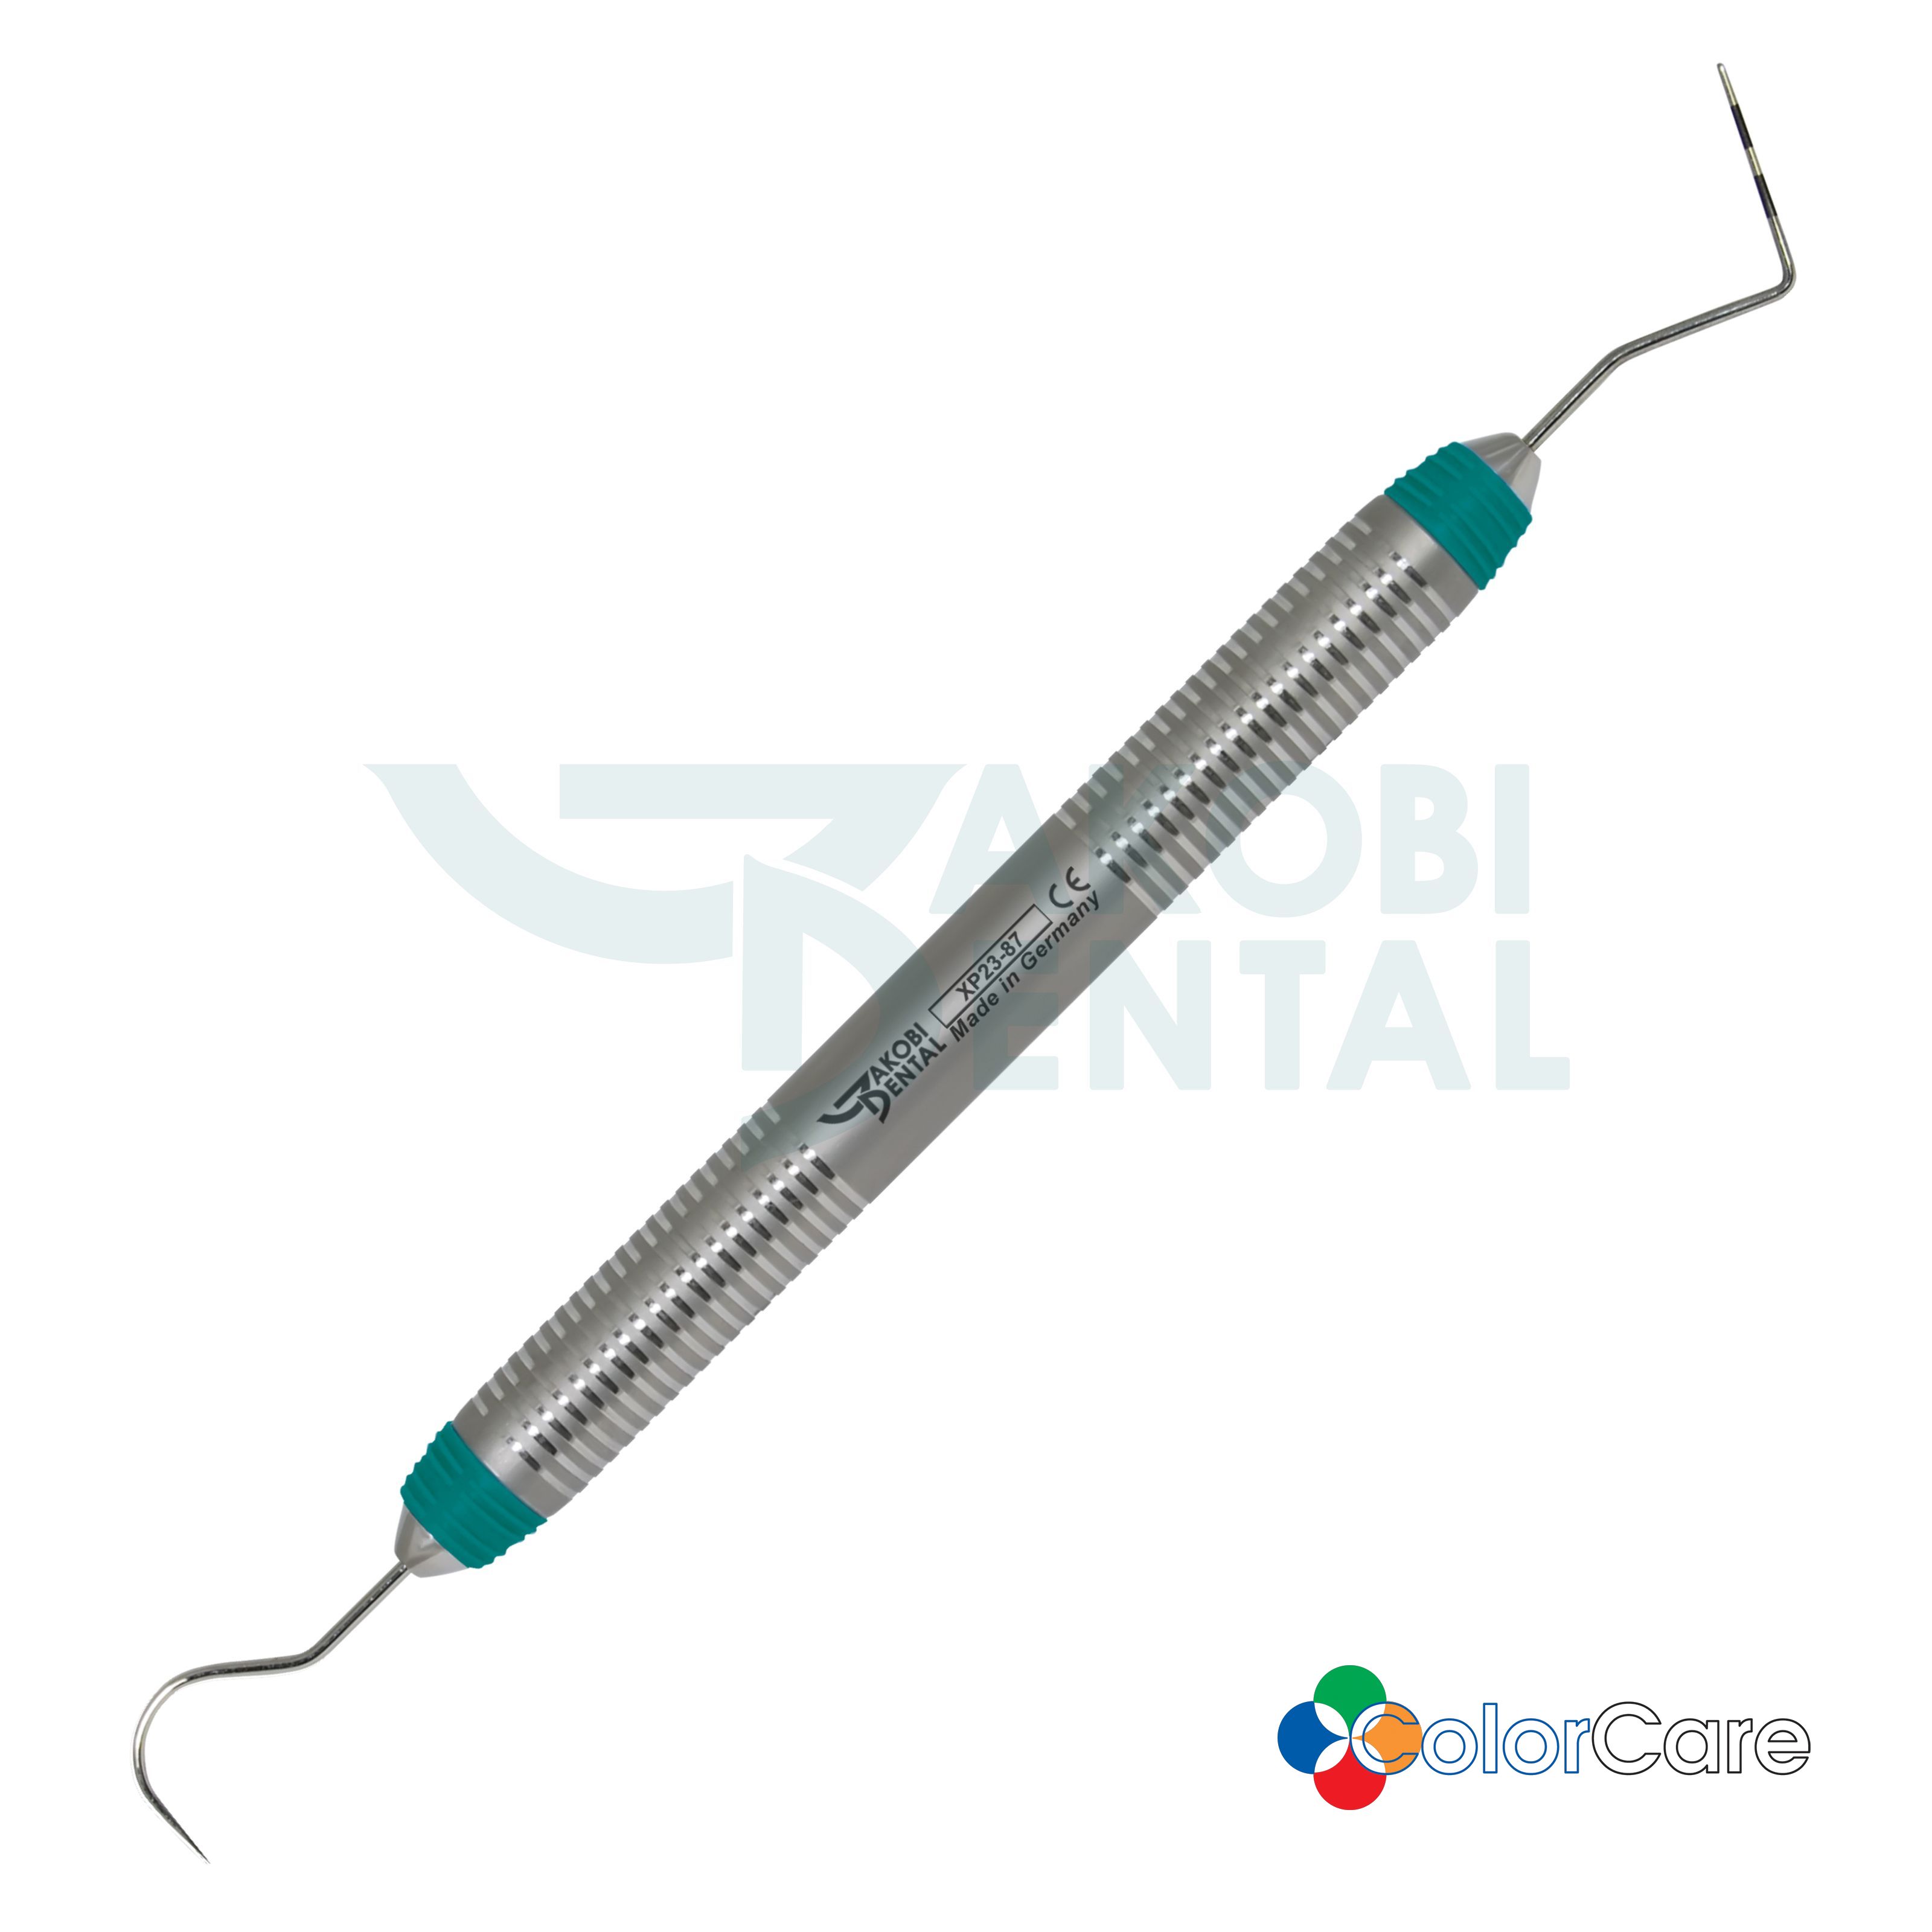 Sonde-Parodontometer # 23/PCP8, ColorCare Griff # 7